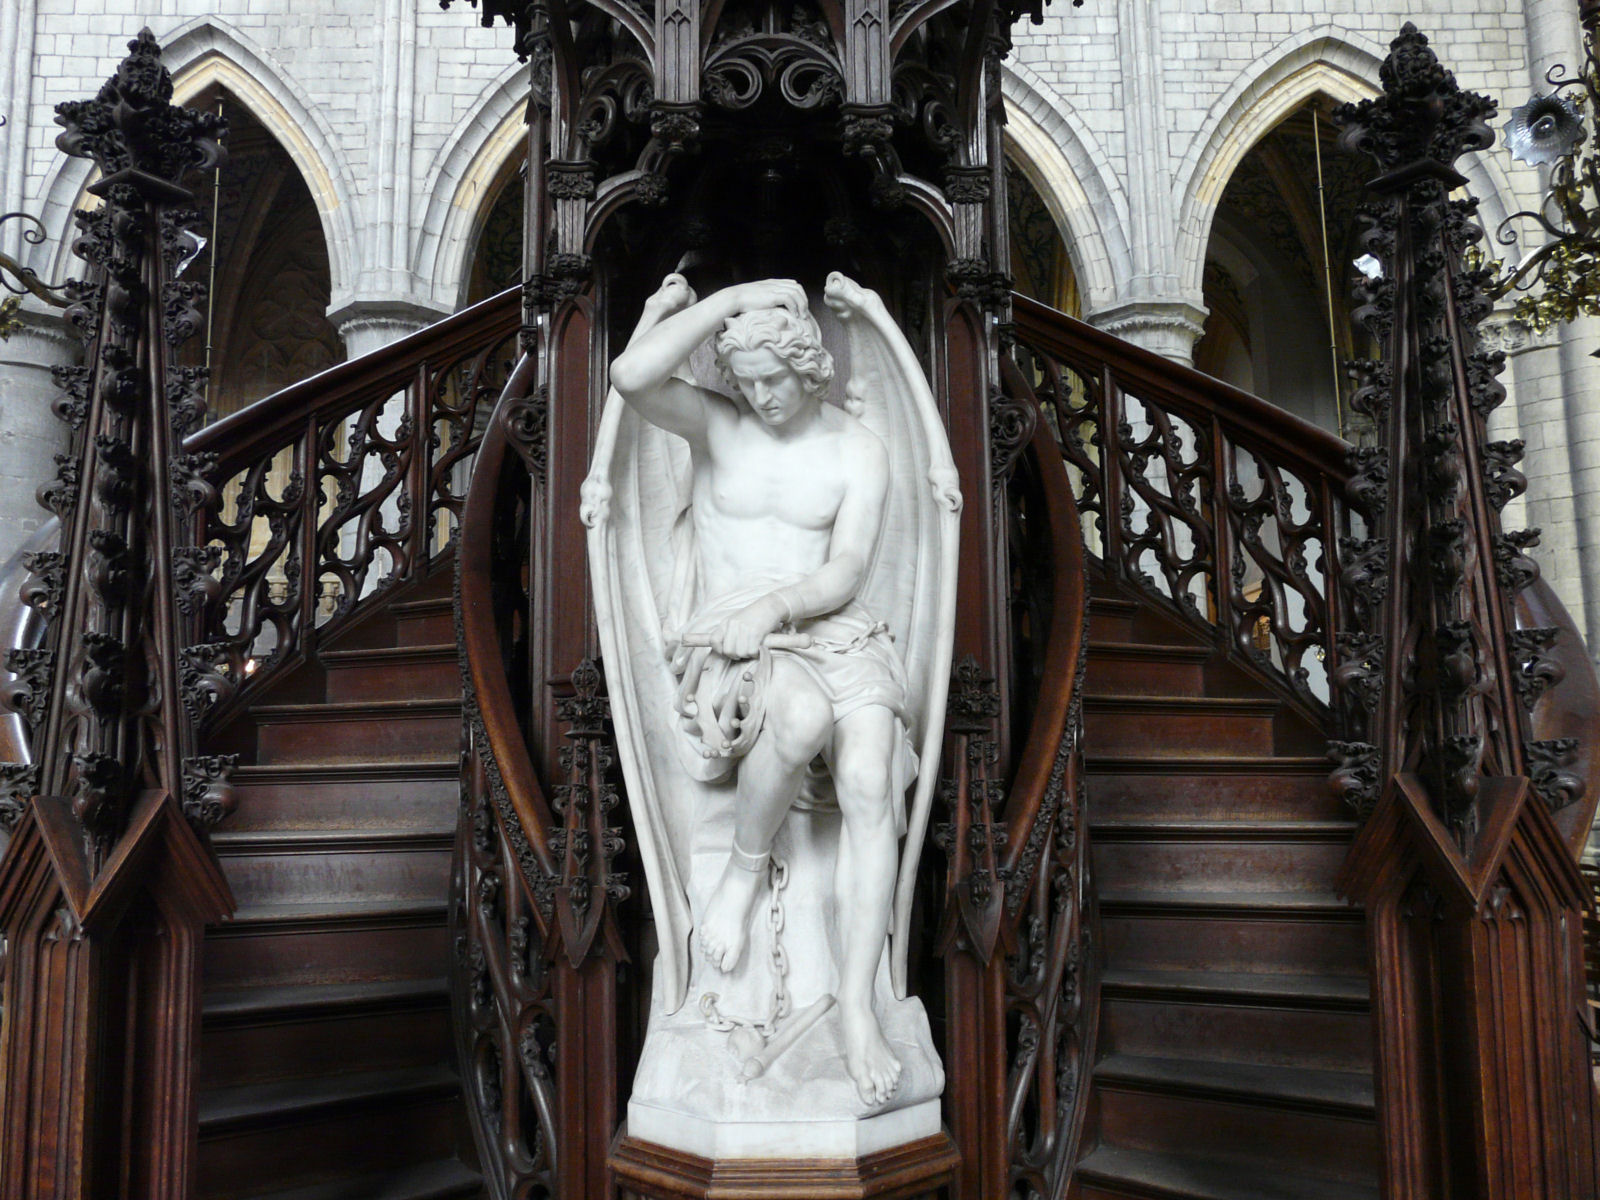 Lúcifer de Liège: mas como diabos o Diabo foi parar no púlpito de uma catedral?